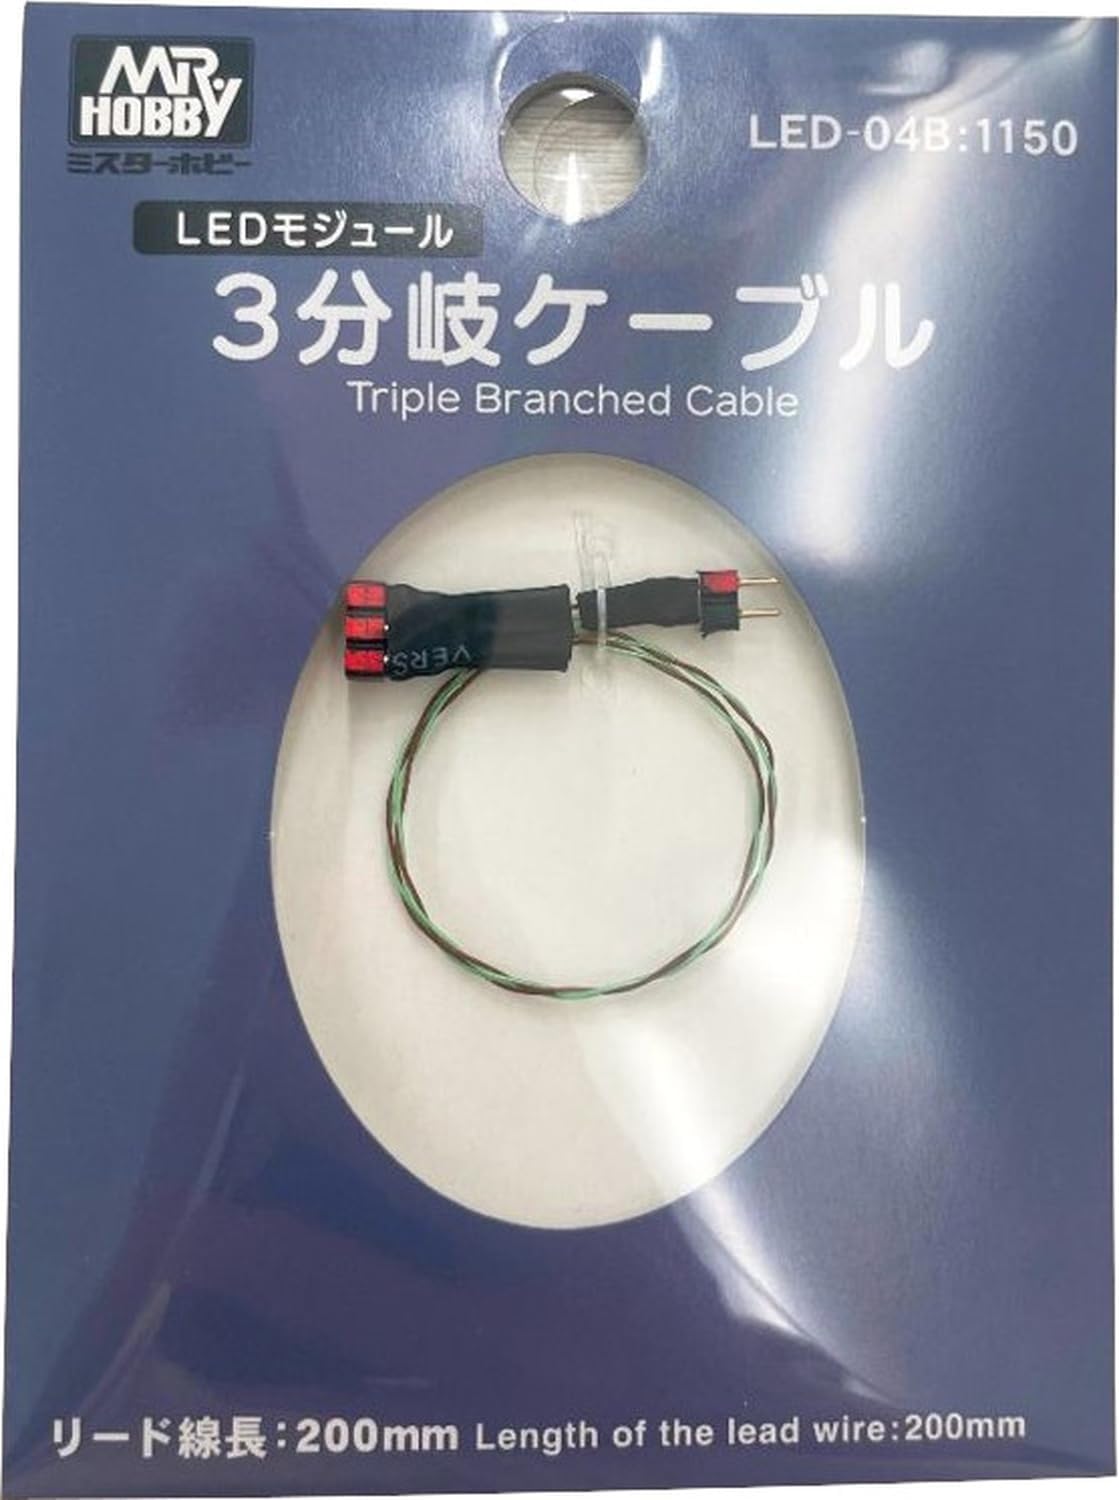 GSI Creos LED-04B VANCE PROJECT 3-Way Cable - BanzaiHobby